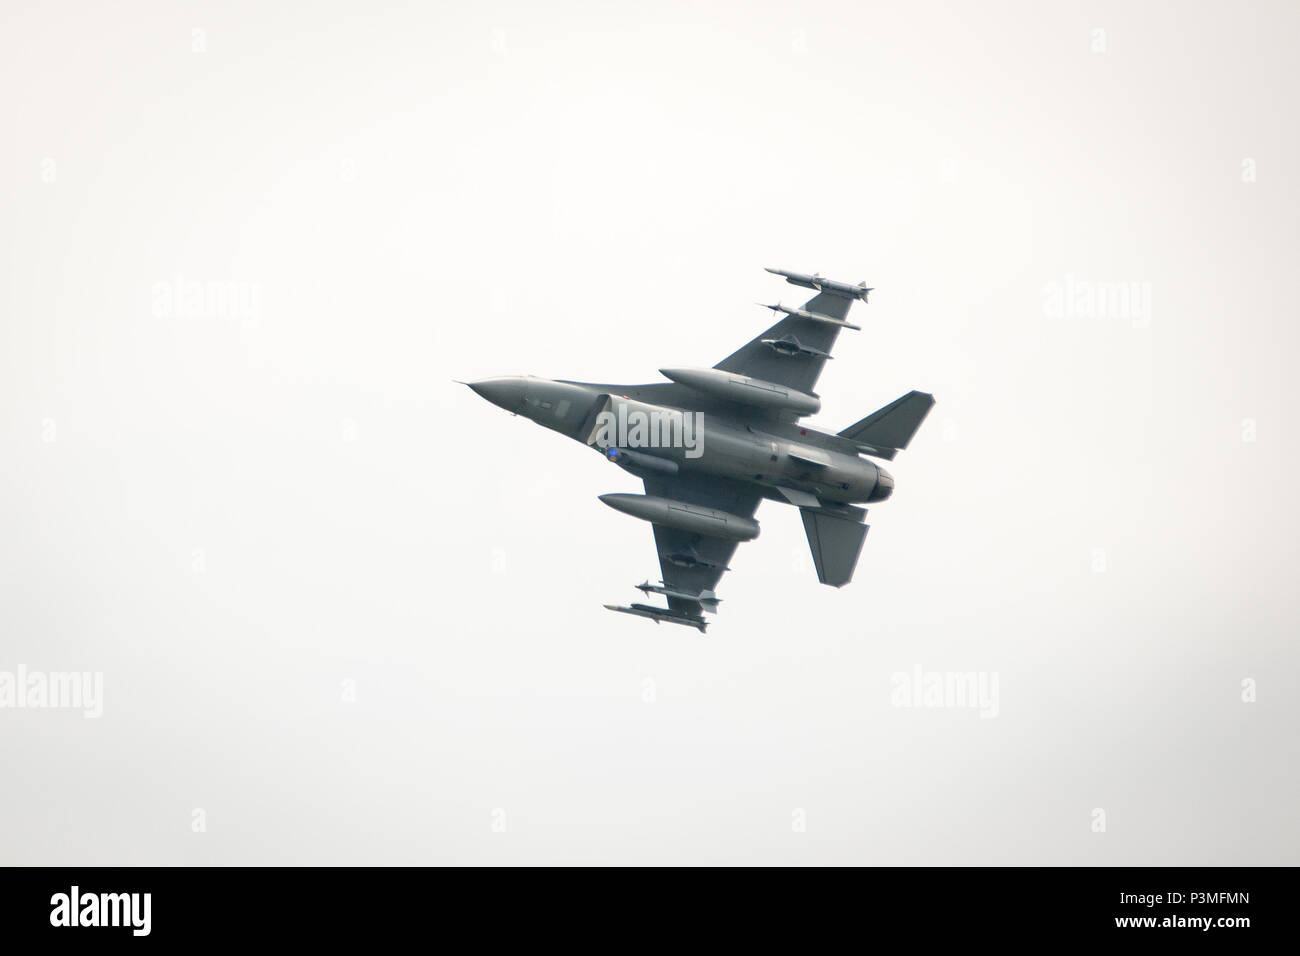 En Wisconsin, la Guardia Nacional Aérea de combate F-16 Falcon, 115ª Ala de caza, preformas práctica misiones inertes, usando una bomba de 500 libras en Fort McCoy, Wisconsin, el 13 de julio de 2016. (Ee.Uu. Foto del ejército por el SPC. John Russell/liberado) Foto de stock